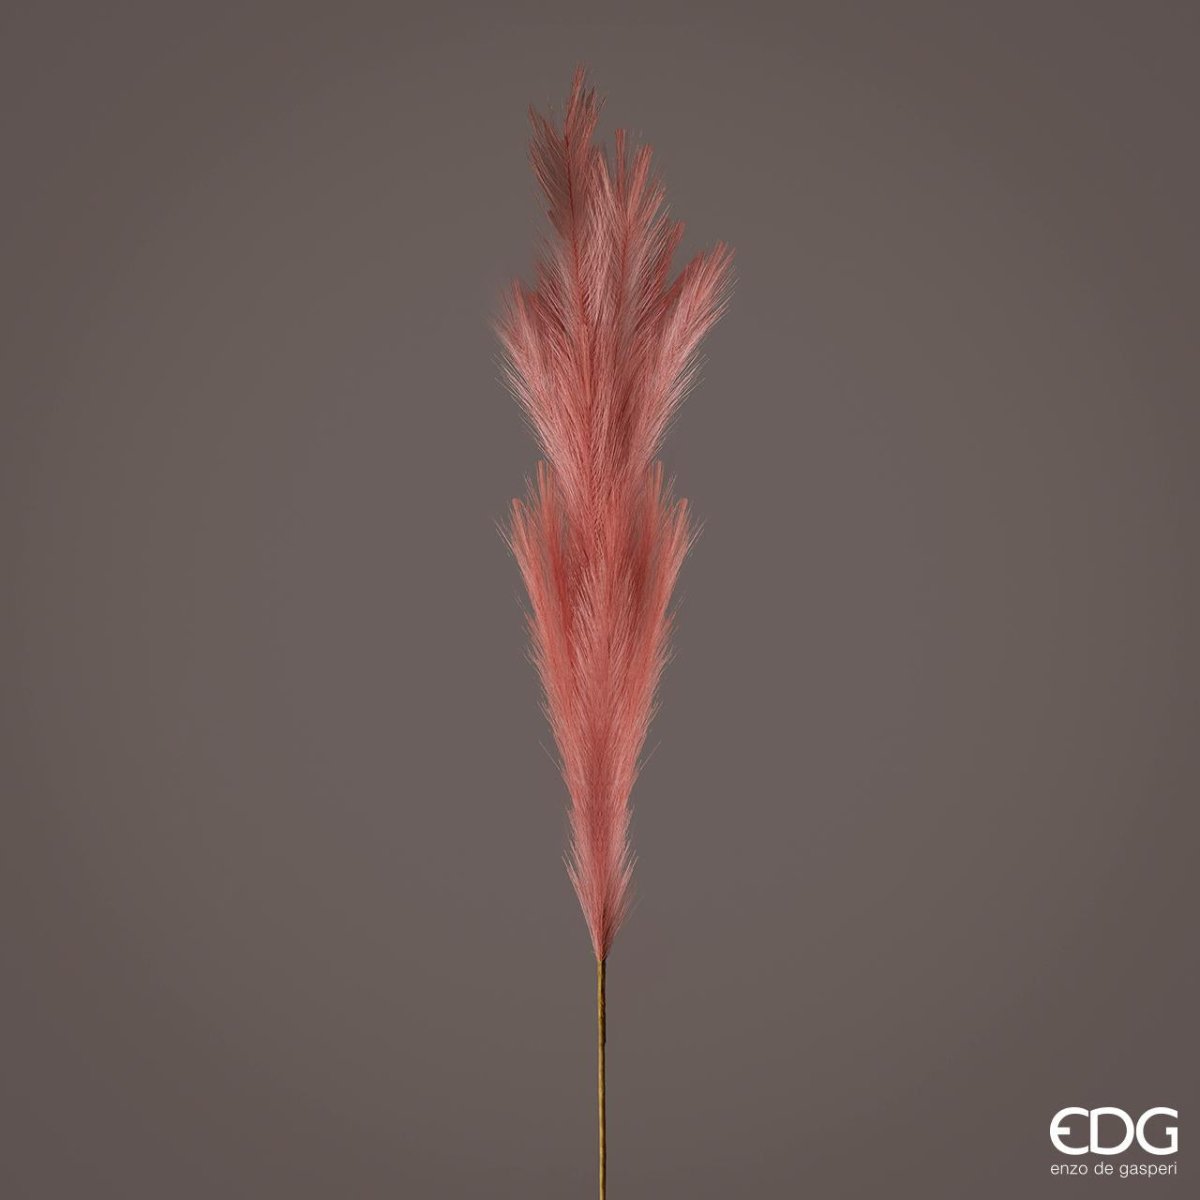 Edg - ramo pampas rosa antico h 130cm | rohome - Rohome